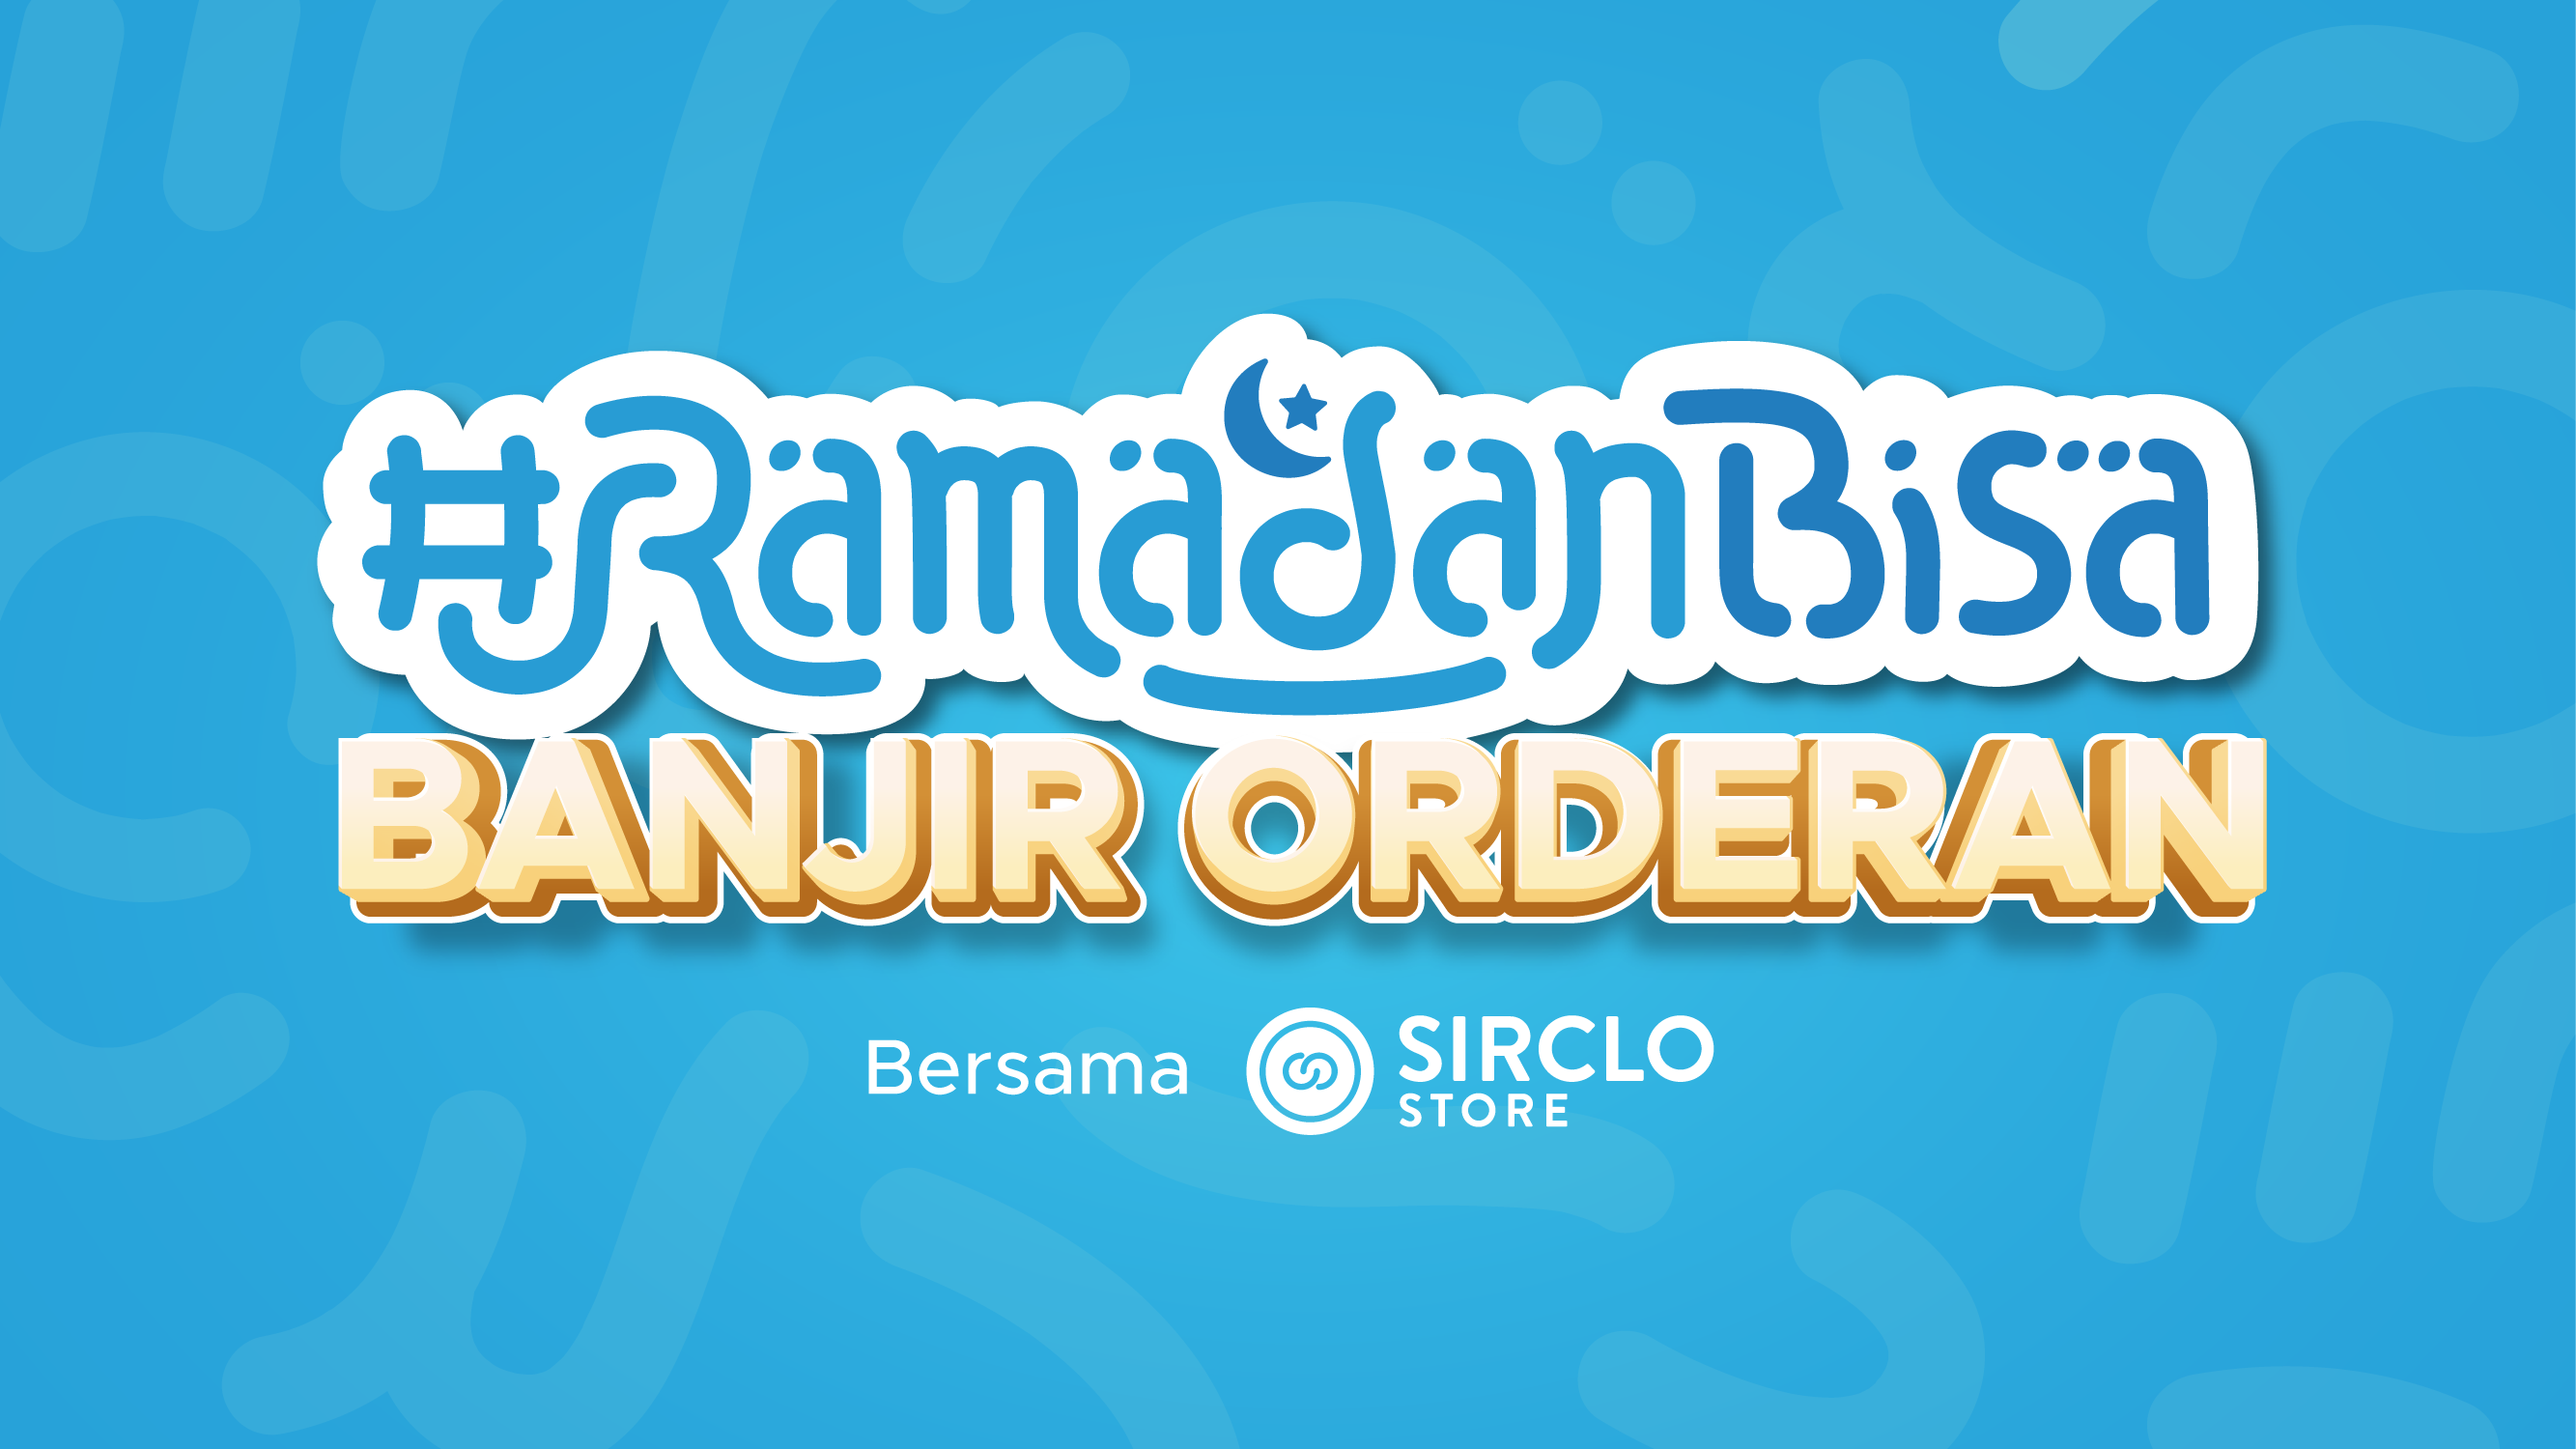 #RamadanBisa Banjir Orderan Pakai SIRCLO Store